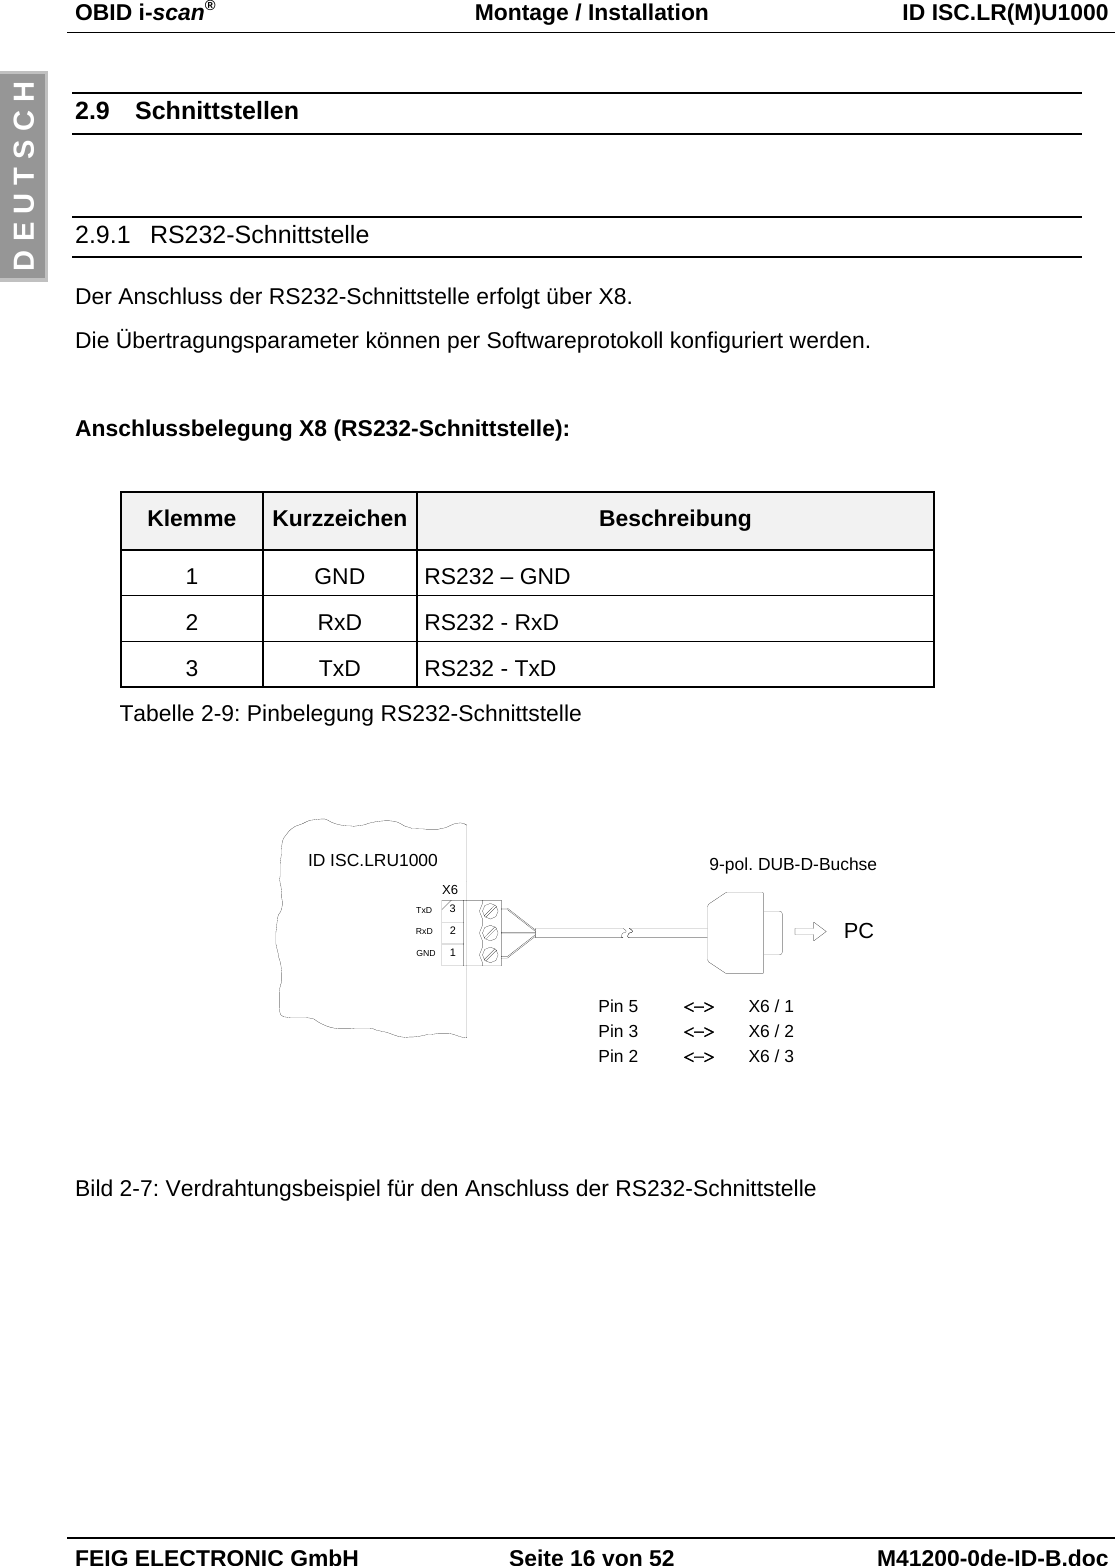 OBID i-scan®Montage / Installation ID ISC.LR(M)U1000FEIG ELECTRONIC GmbH Seite 16 von 52 M41200-0de-ID-B.docD E U T S C H2.9 Schnittstellen2.9.1 RS232-SchnittstelleDer Anschluss der RS232-Schnittstelle erfolgt über X8.Die Übertragungsparameter können per Softwareprotokoll konfiguriert werden.Anschlussbelegung X8 (RS232-Schnittstelle):Klemme Kurzzeichen Beschreibung1 GND RS232 – GND2 RxD RS232 - RxD3 TxD RS232 - TxDTabelle 2-9: Pinbelegung RS232-SchnittstelleBild 2-7: Verdrahtungsbeispiel für den Anschluss der RS232-SchnittstelleX6 / 1Pin 59-pol. DUB-D-BuchseGNDRxDTxDID ISC.LRU1000123X6PC&lt;−&gt;&lt;−&gt;&lt;−&gt;X6 / 3Pin 2X6 / 2Pin 3